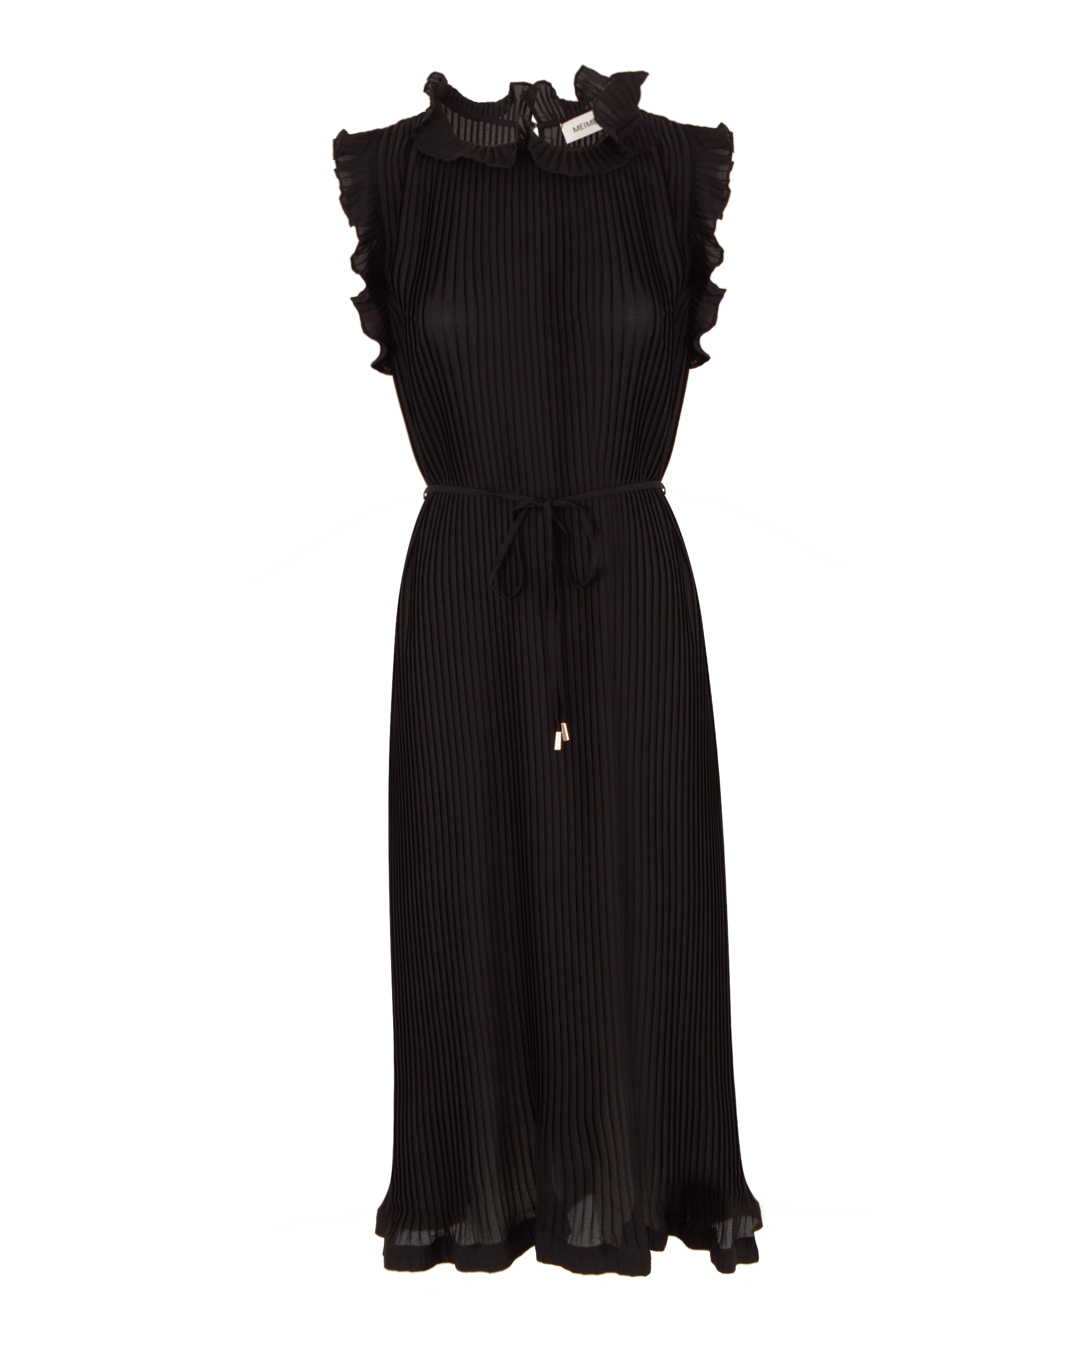 платье MEIMEIJ M4EH04 черный 40, размер 40 - фото 1